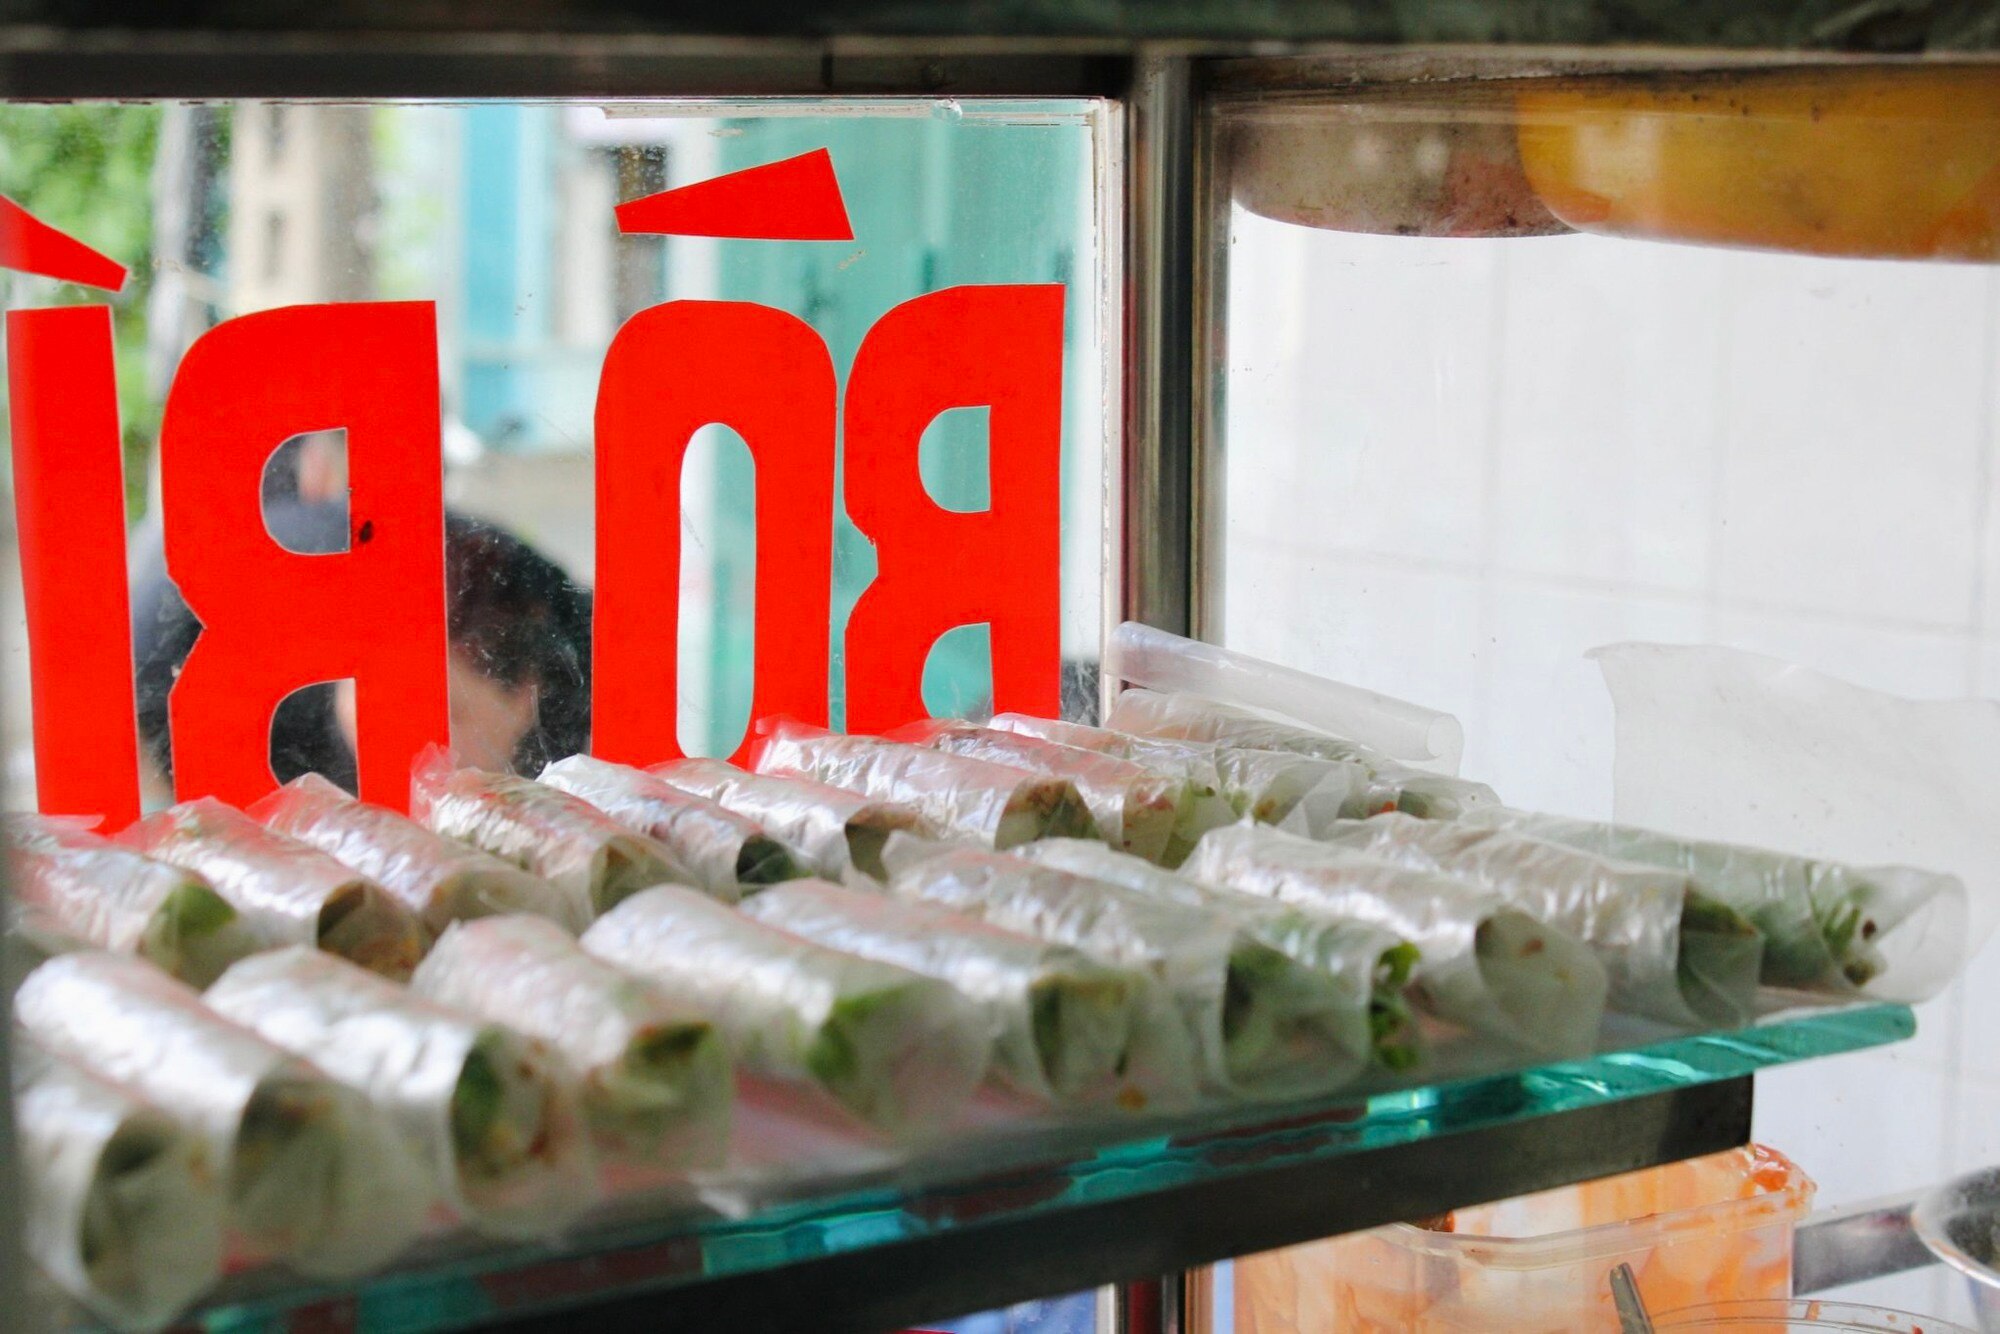 Bò bía rẻ nhất Sài Gòn: bán hơn 25 năm, khách mê vì nước chấm độc quyền - Ảnh 3.